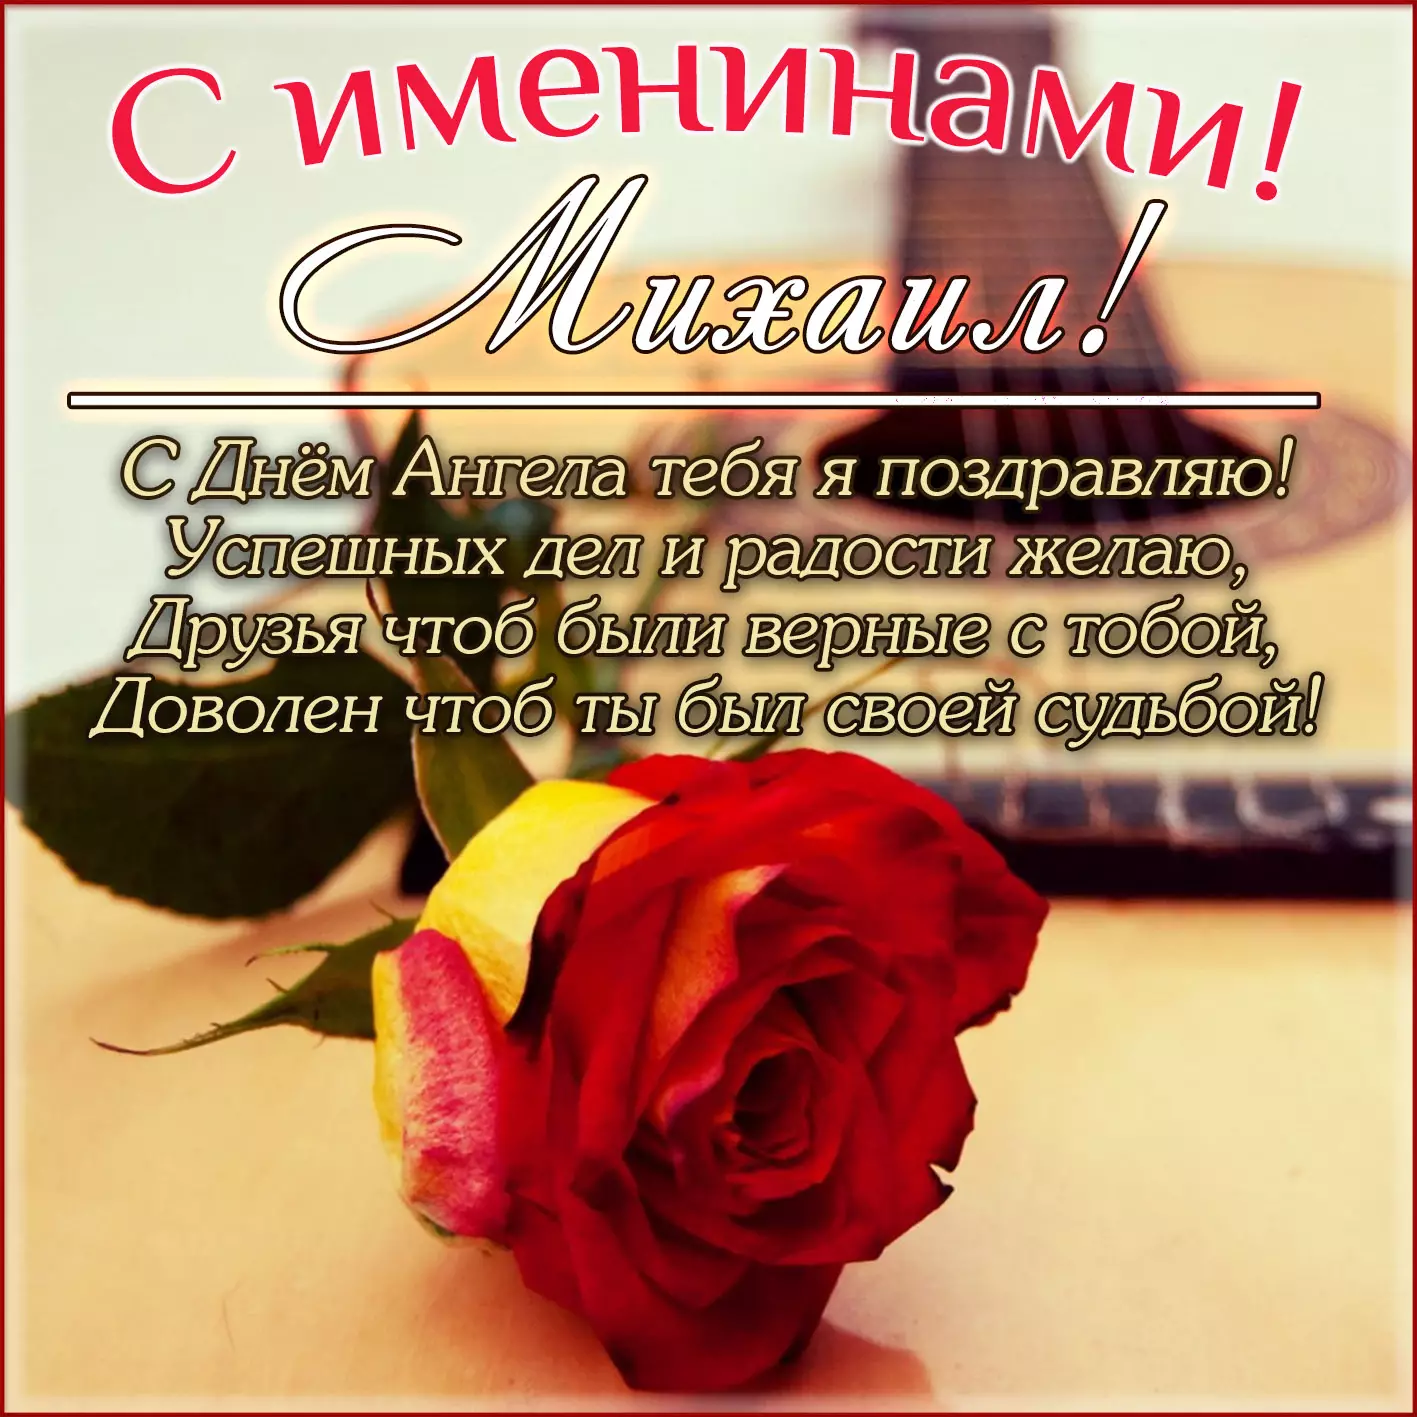 Поздравления в Михайлов день 2019 картинки и пожелания